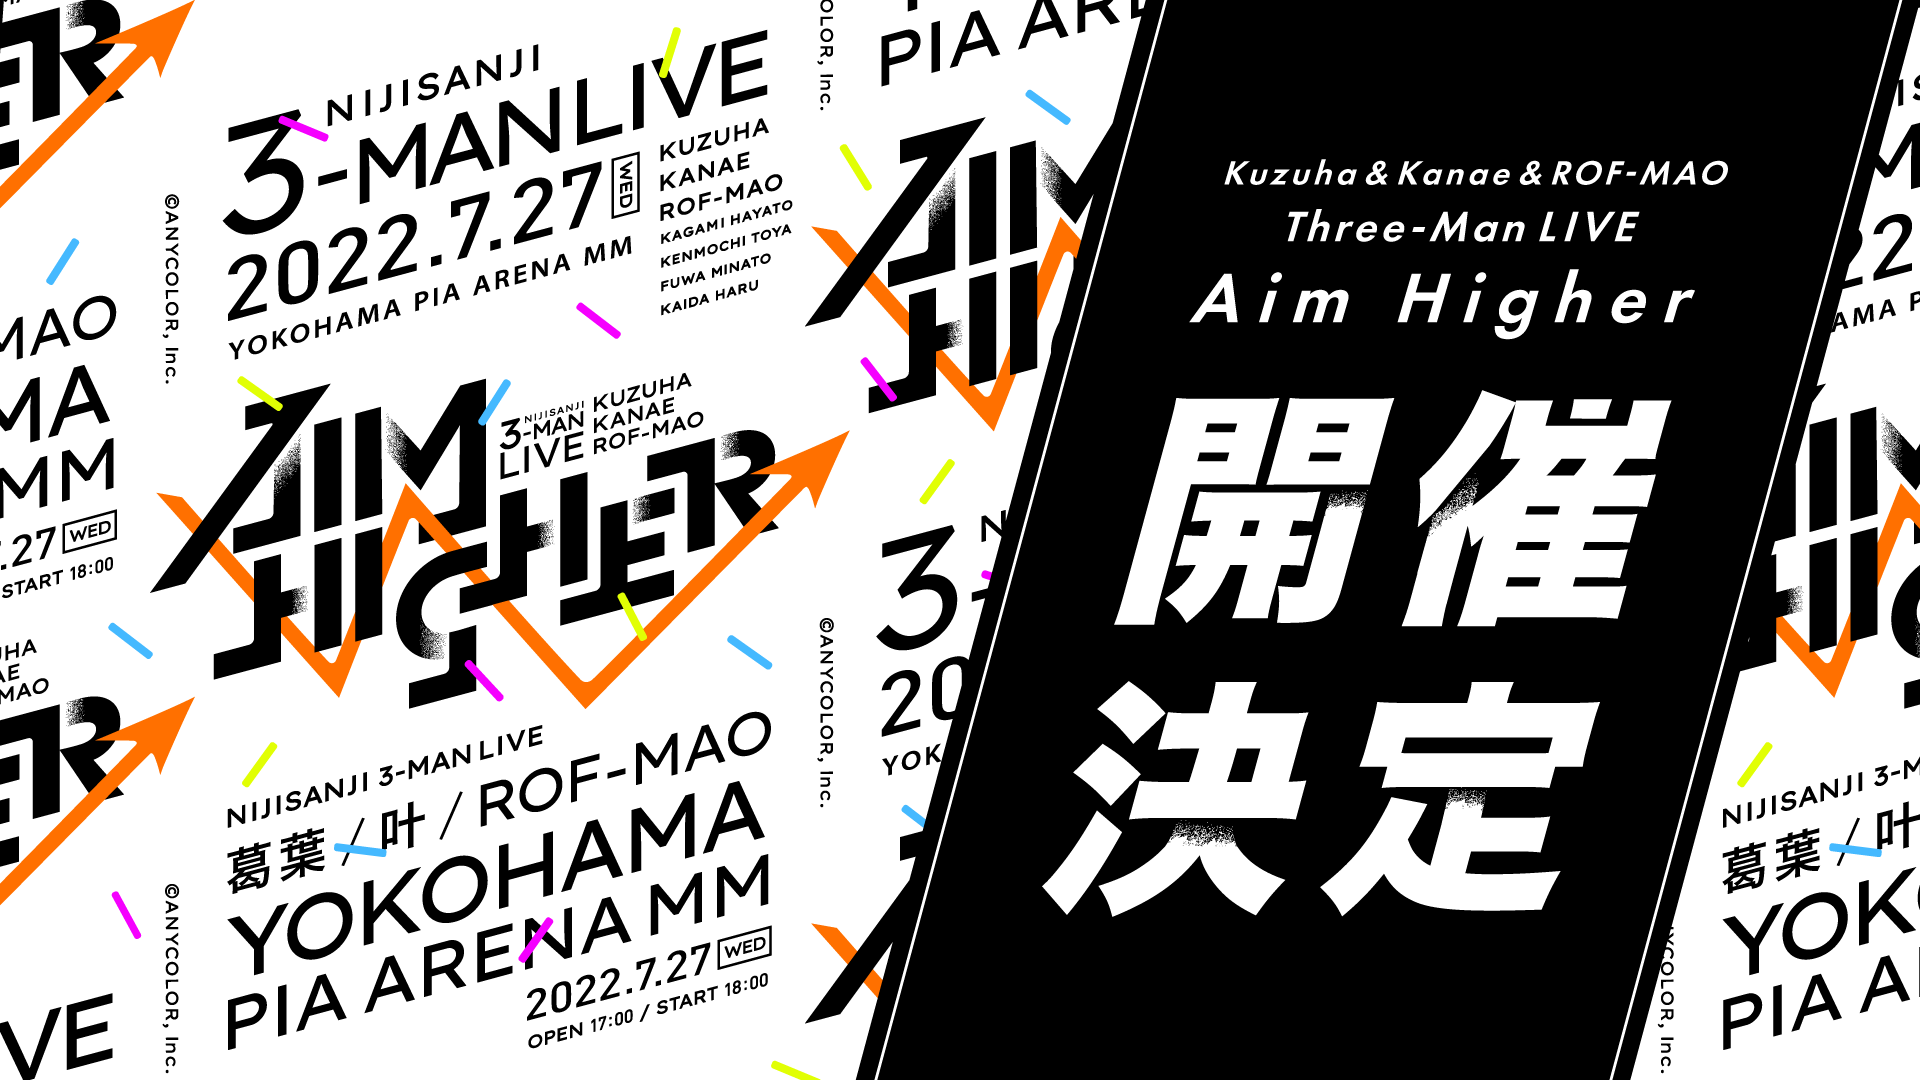 葛葉さん・叶さん・ROF-MAOによる3マンライブ「Aim Higher」7月27日(水)開催！「勢い凄い」